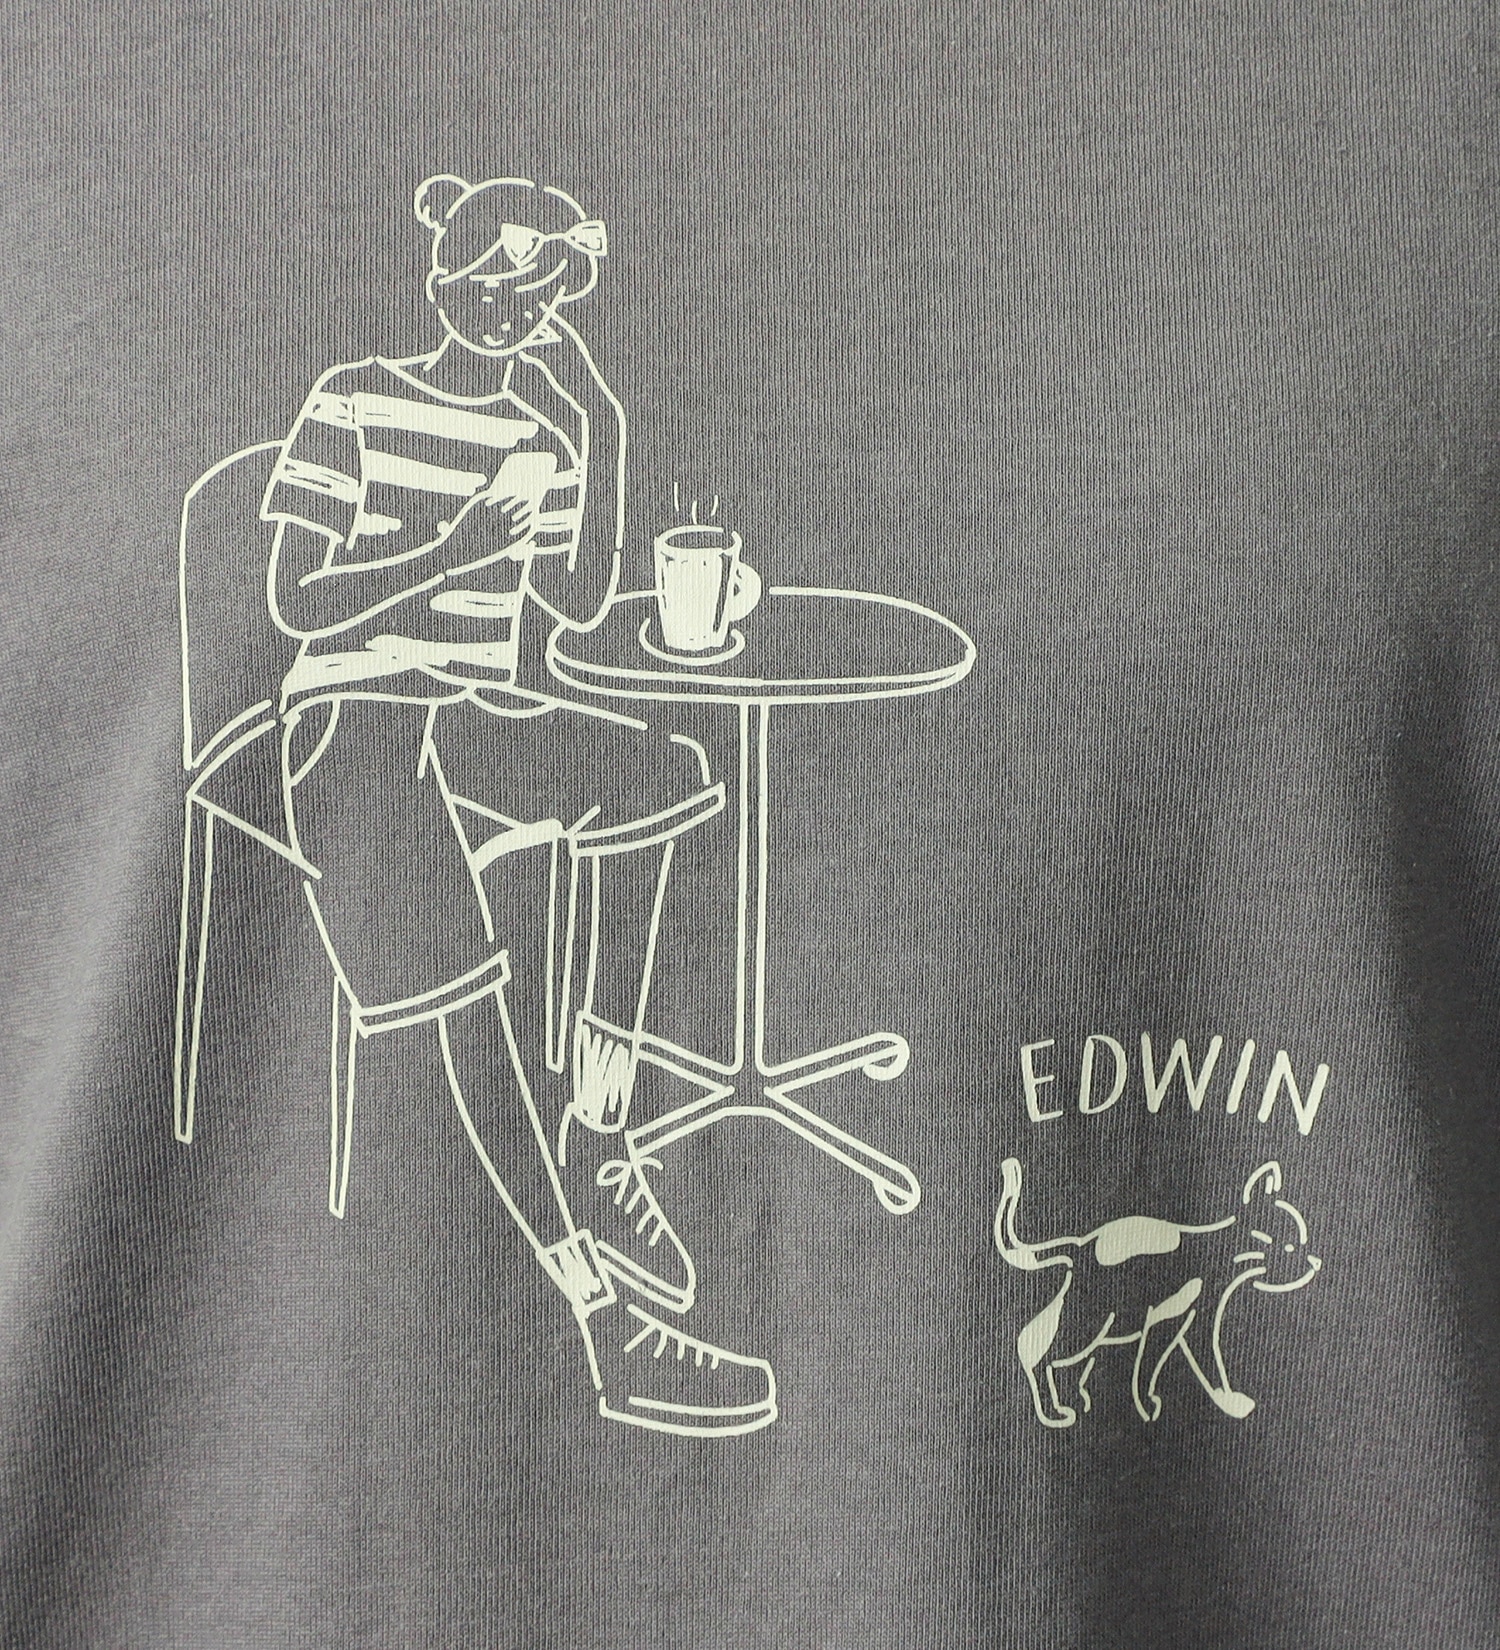 EDWIN(エドウイン)のイラストプリントTシャツ【アウトレット店舗・WEB限定】|トップス/Tシャツ/カットソー/レディース|チャコール